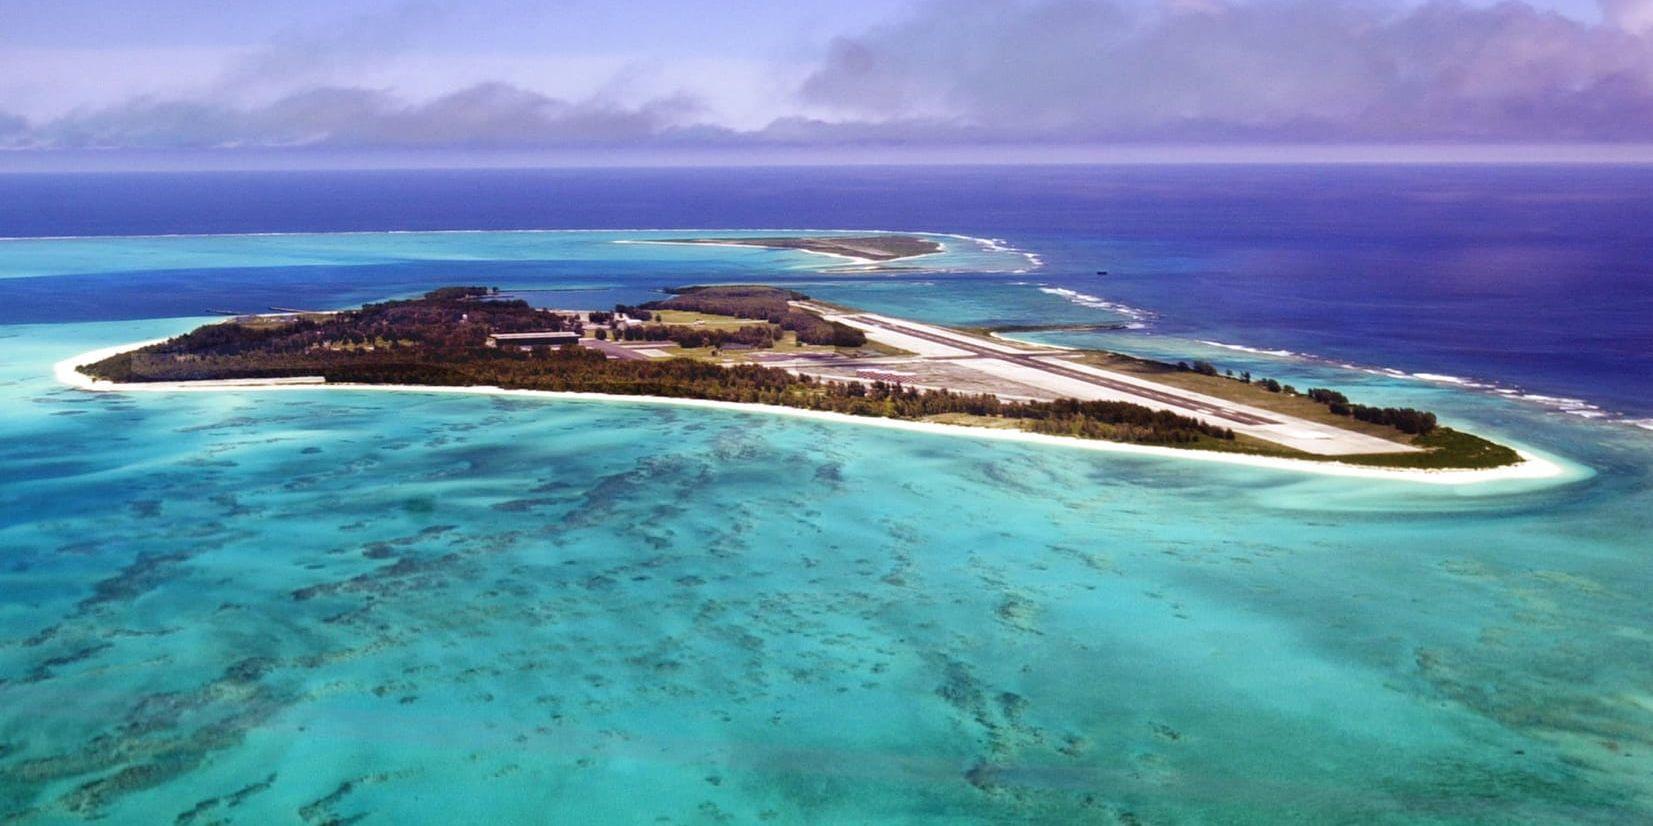 Människan går hårt åt världshaven. Här är Midway-atollen i Stilla havet, som trots att den ligger i stort sett "mitt i ingenstans" drabbas av föroreningar.